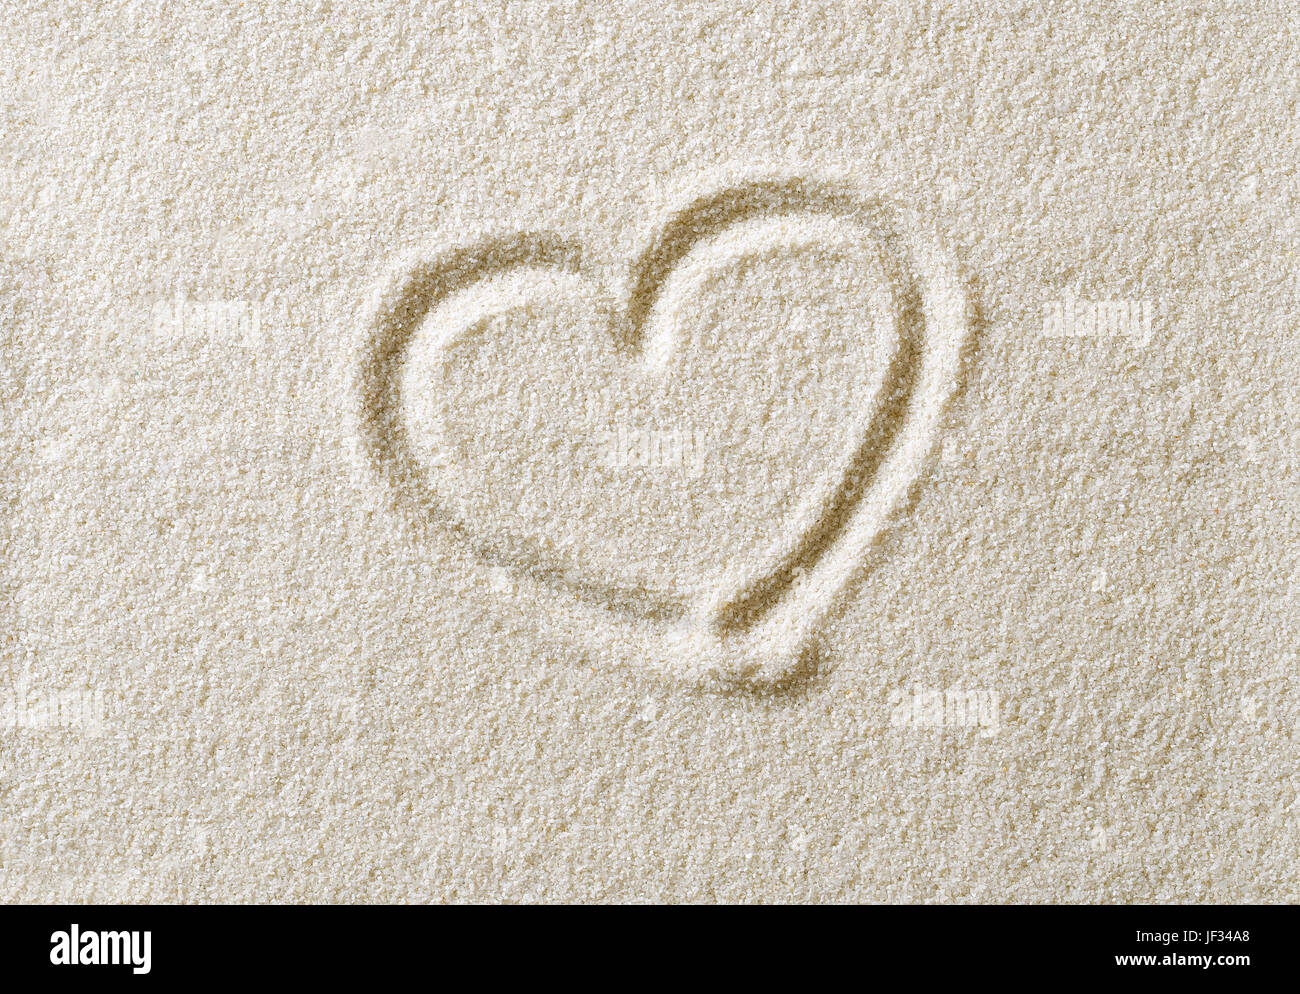 Cuore simbolo disegnato in superficie di sabbia. Forma di cuore, un ideograph per esprimere emozioni come amore romantico. Metaforica. Foto macro close up dal di sopra. Foto Stock